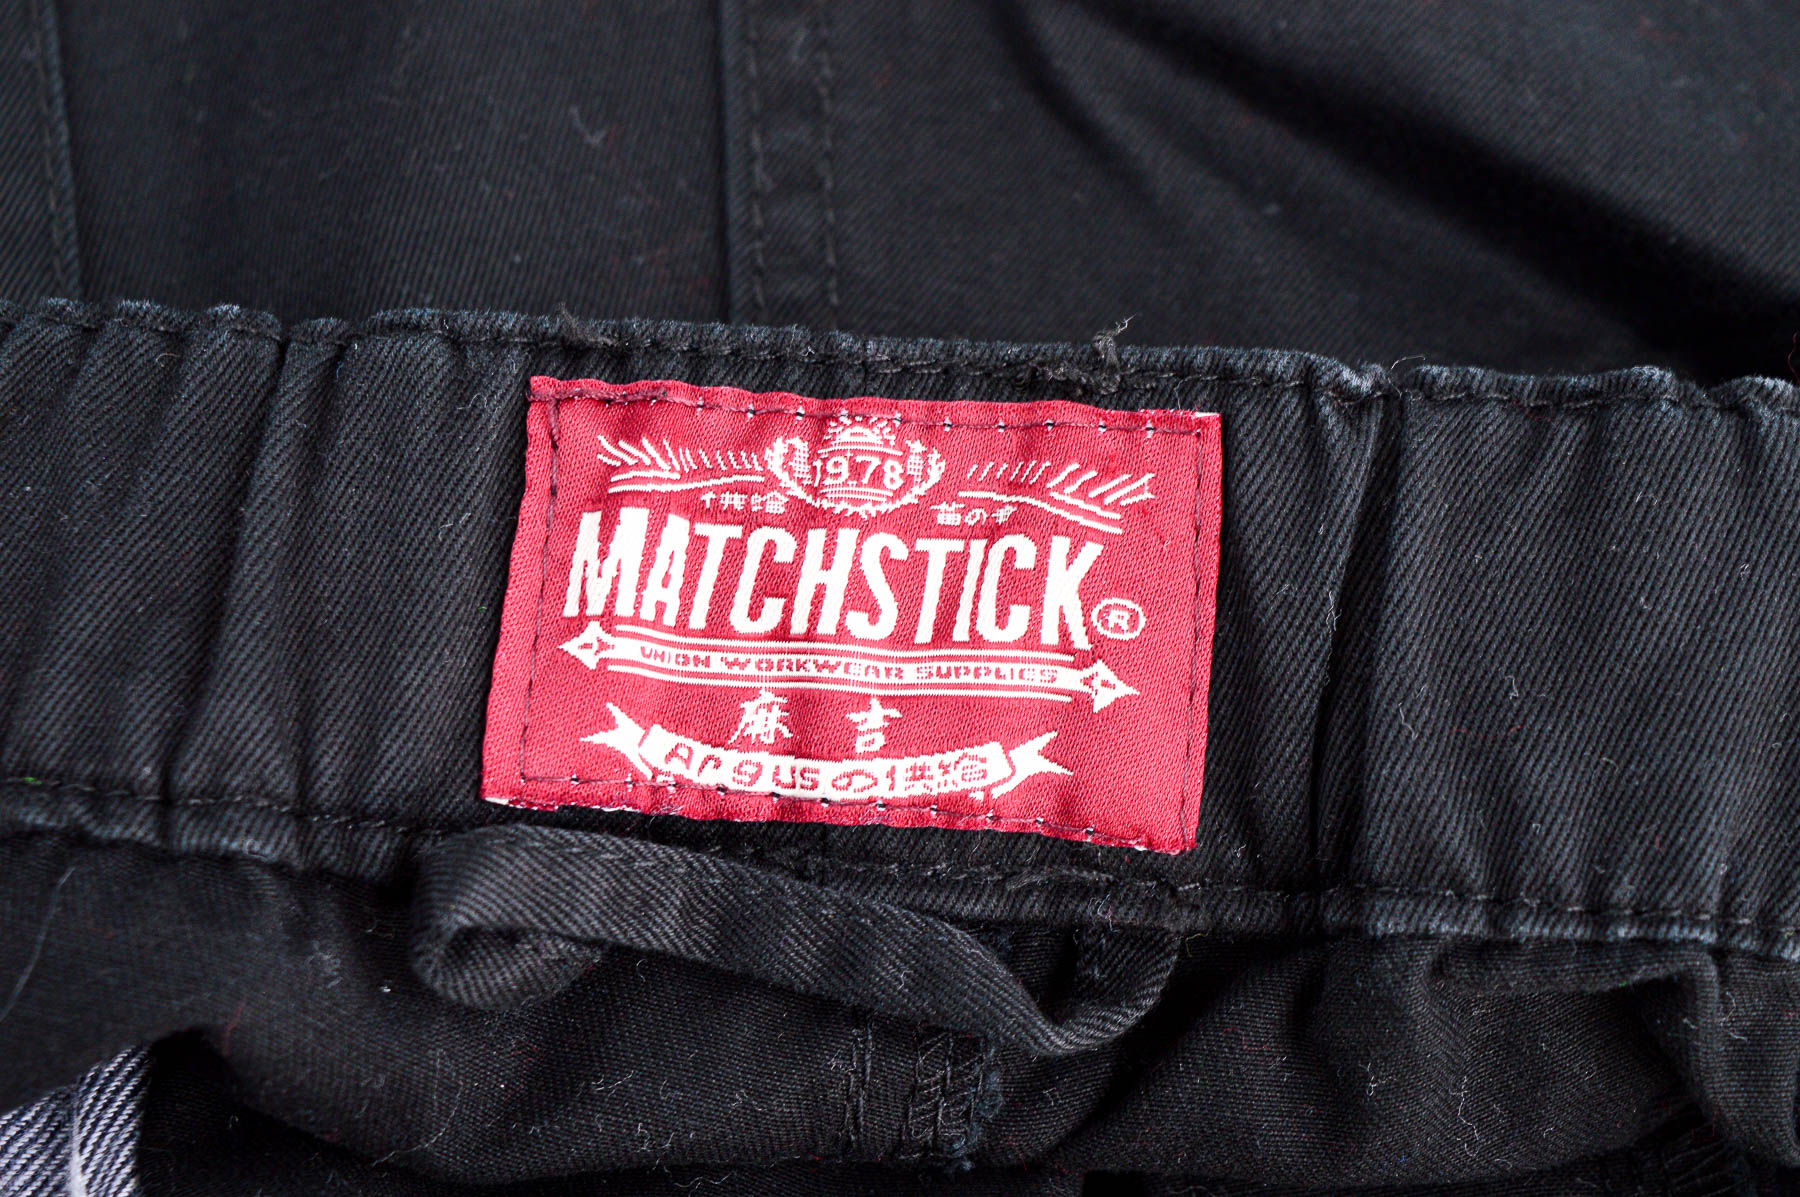 Men's jeans - Matchstick - 2